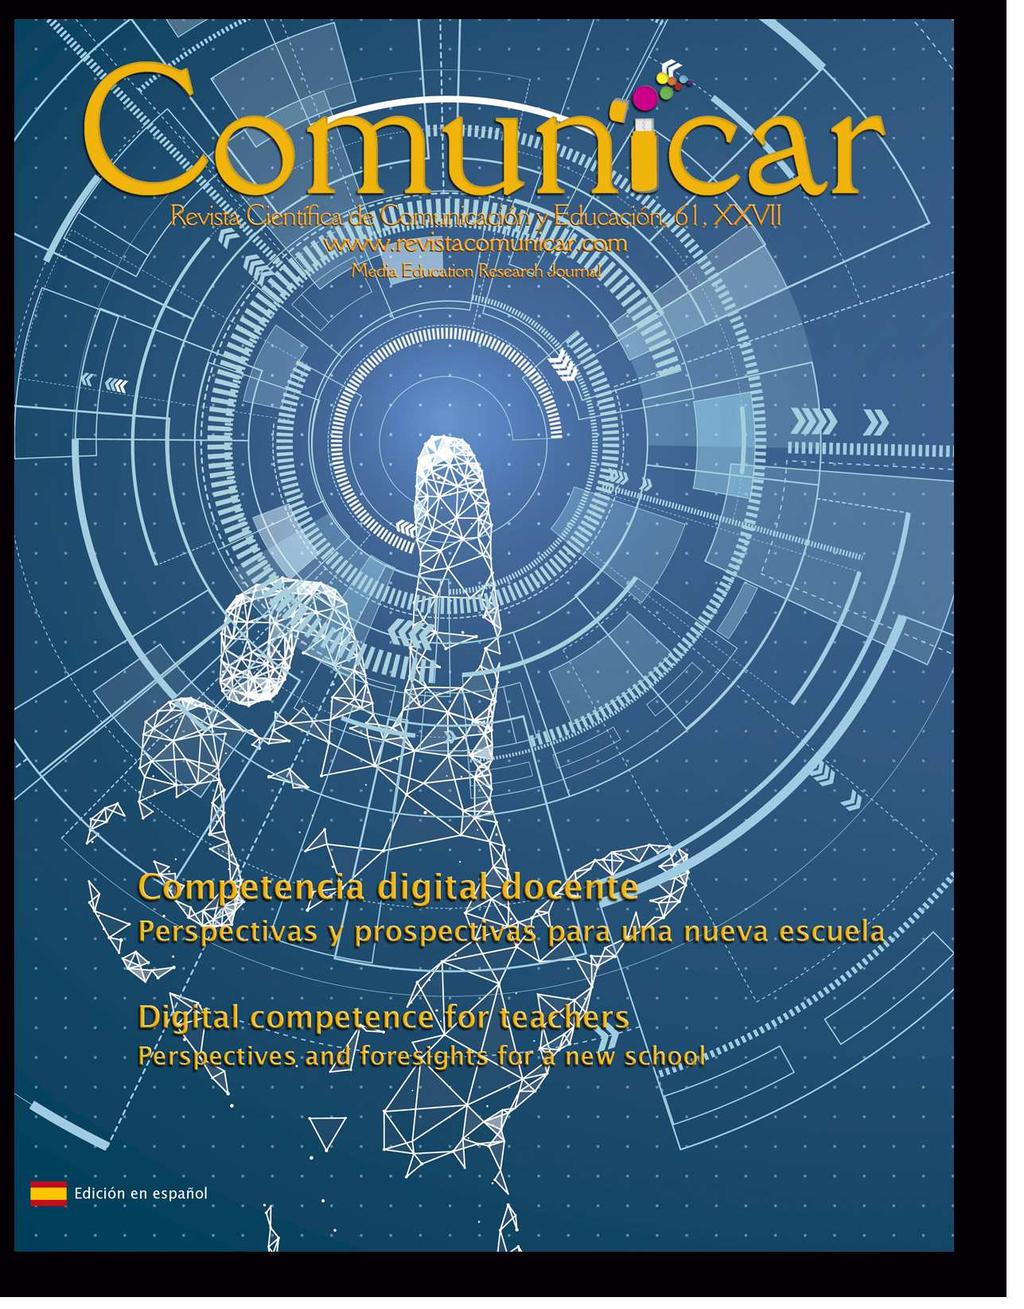 Comunicar, nº 61, v. XXVII, 2019 Revista Científica de Educomunicación ISSN: 1134-3478; e-issn: 1988-3293 www.revistacomunicar.com www.comunicarjournal.